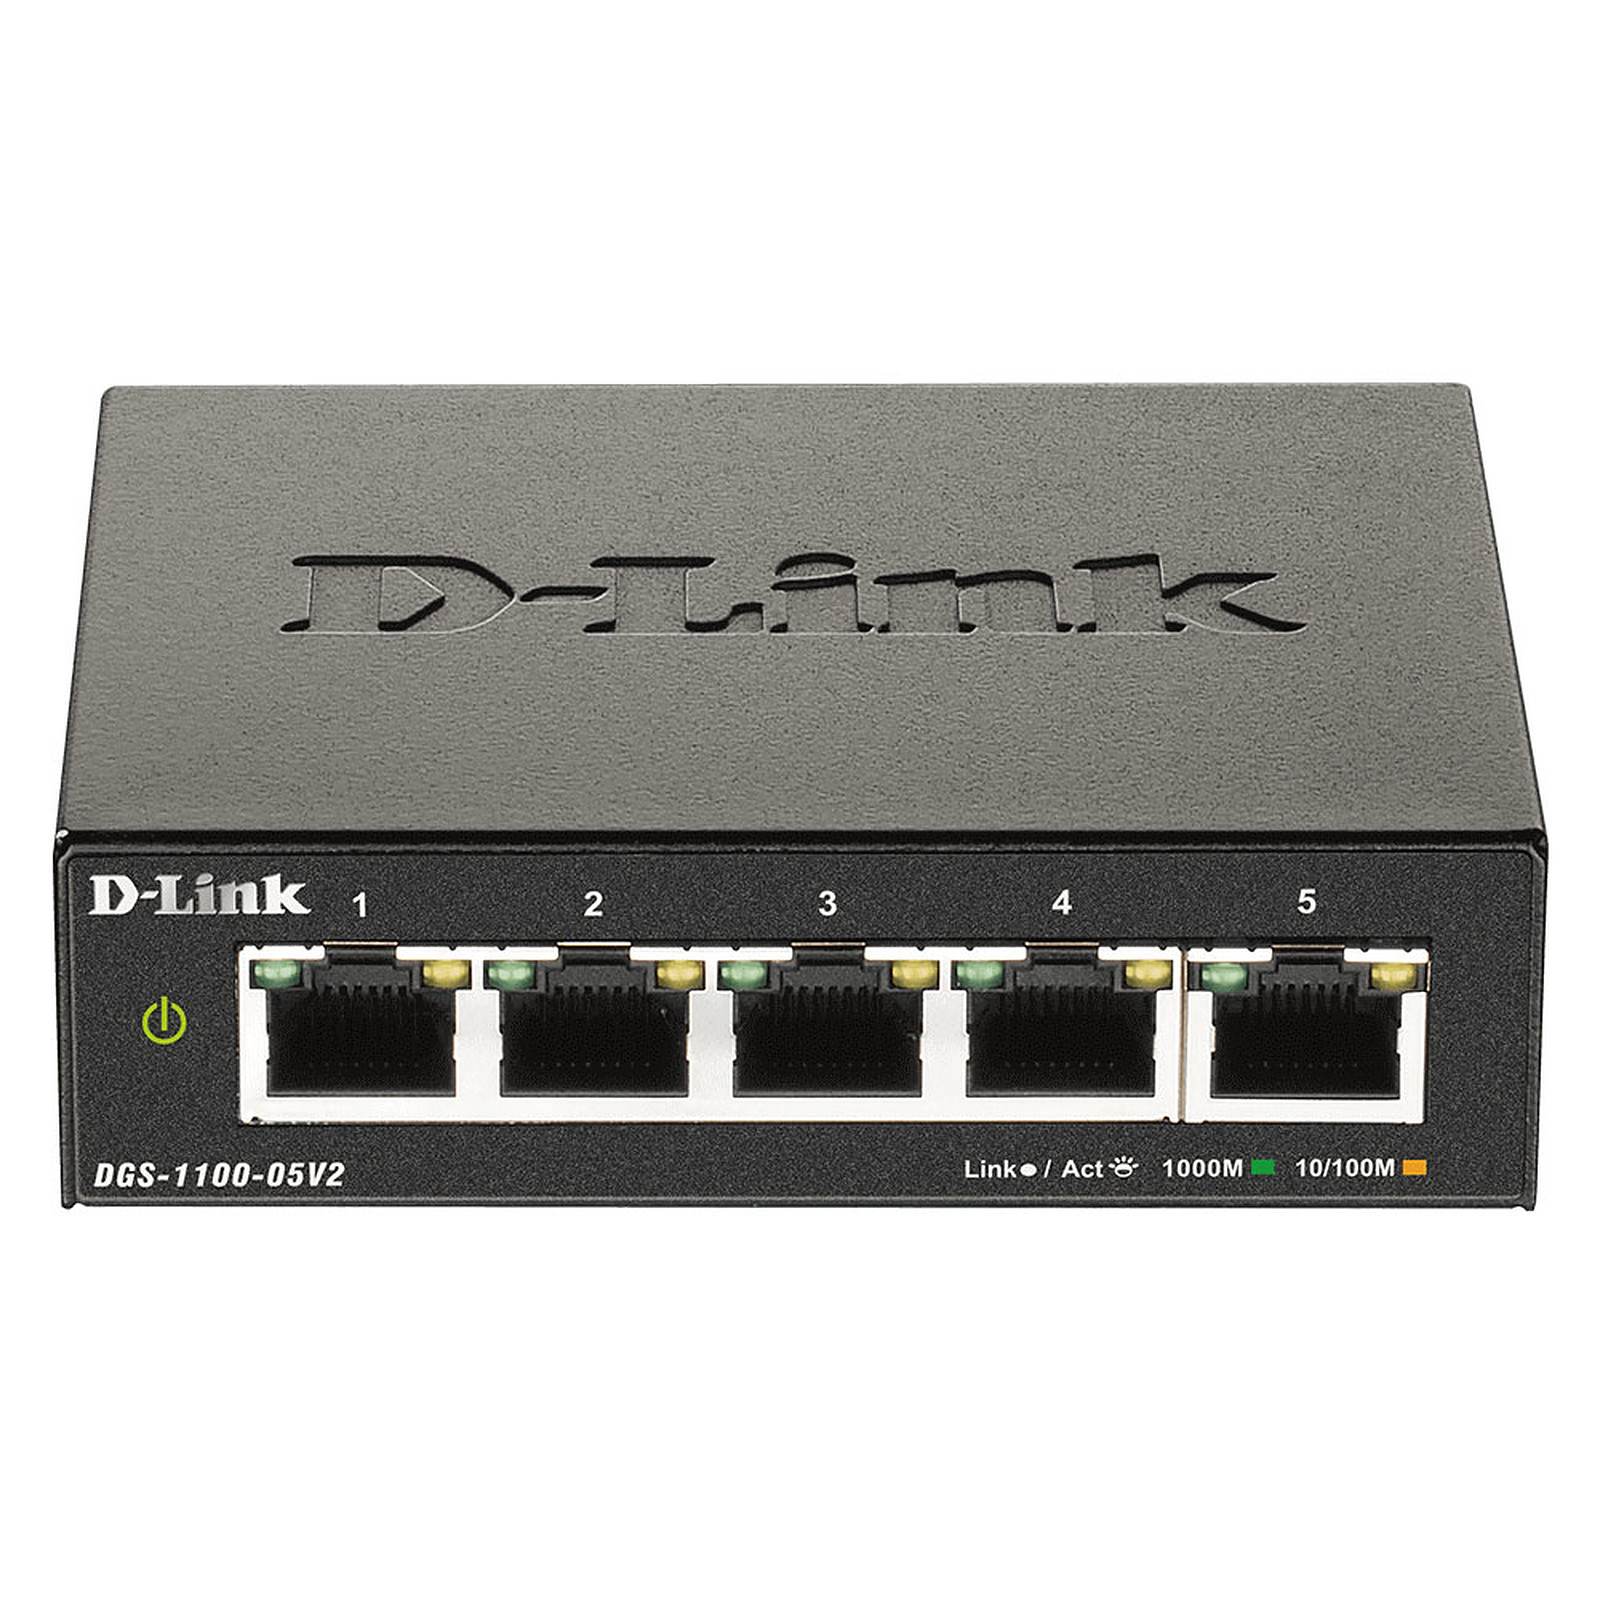 D-Link DGS-1100-05V2 - Switch D-Link